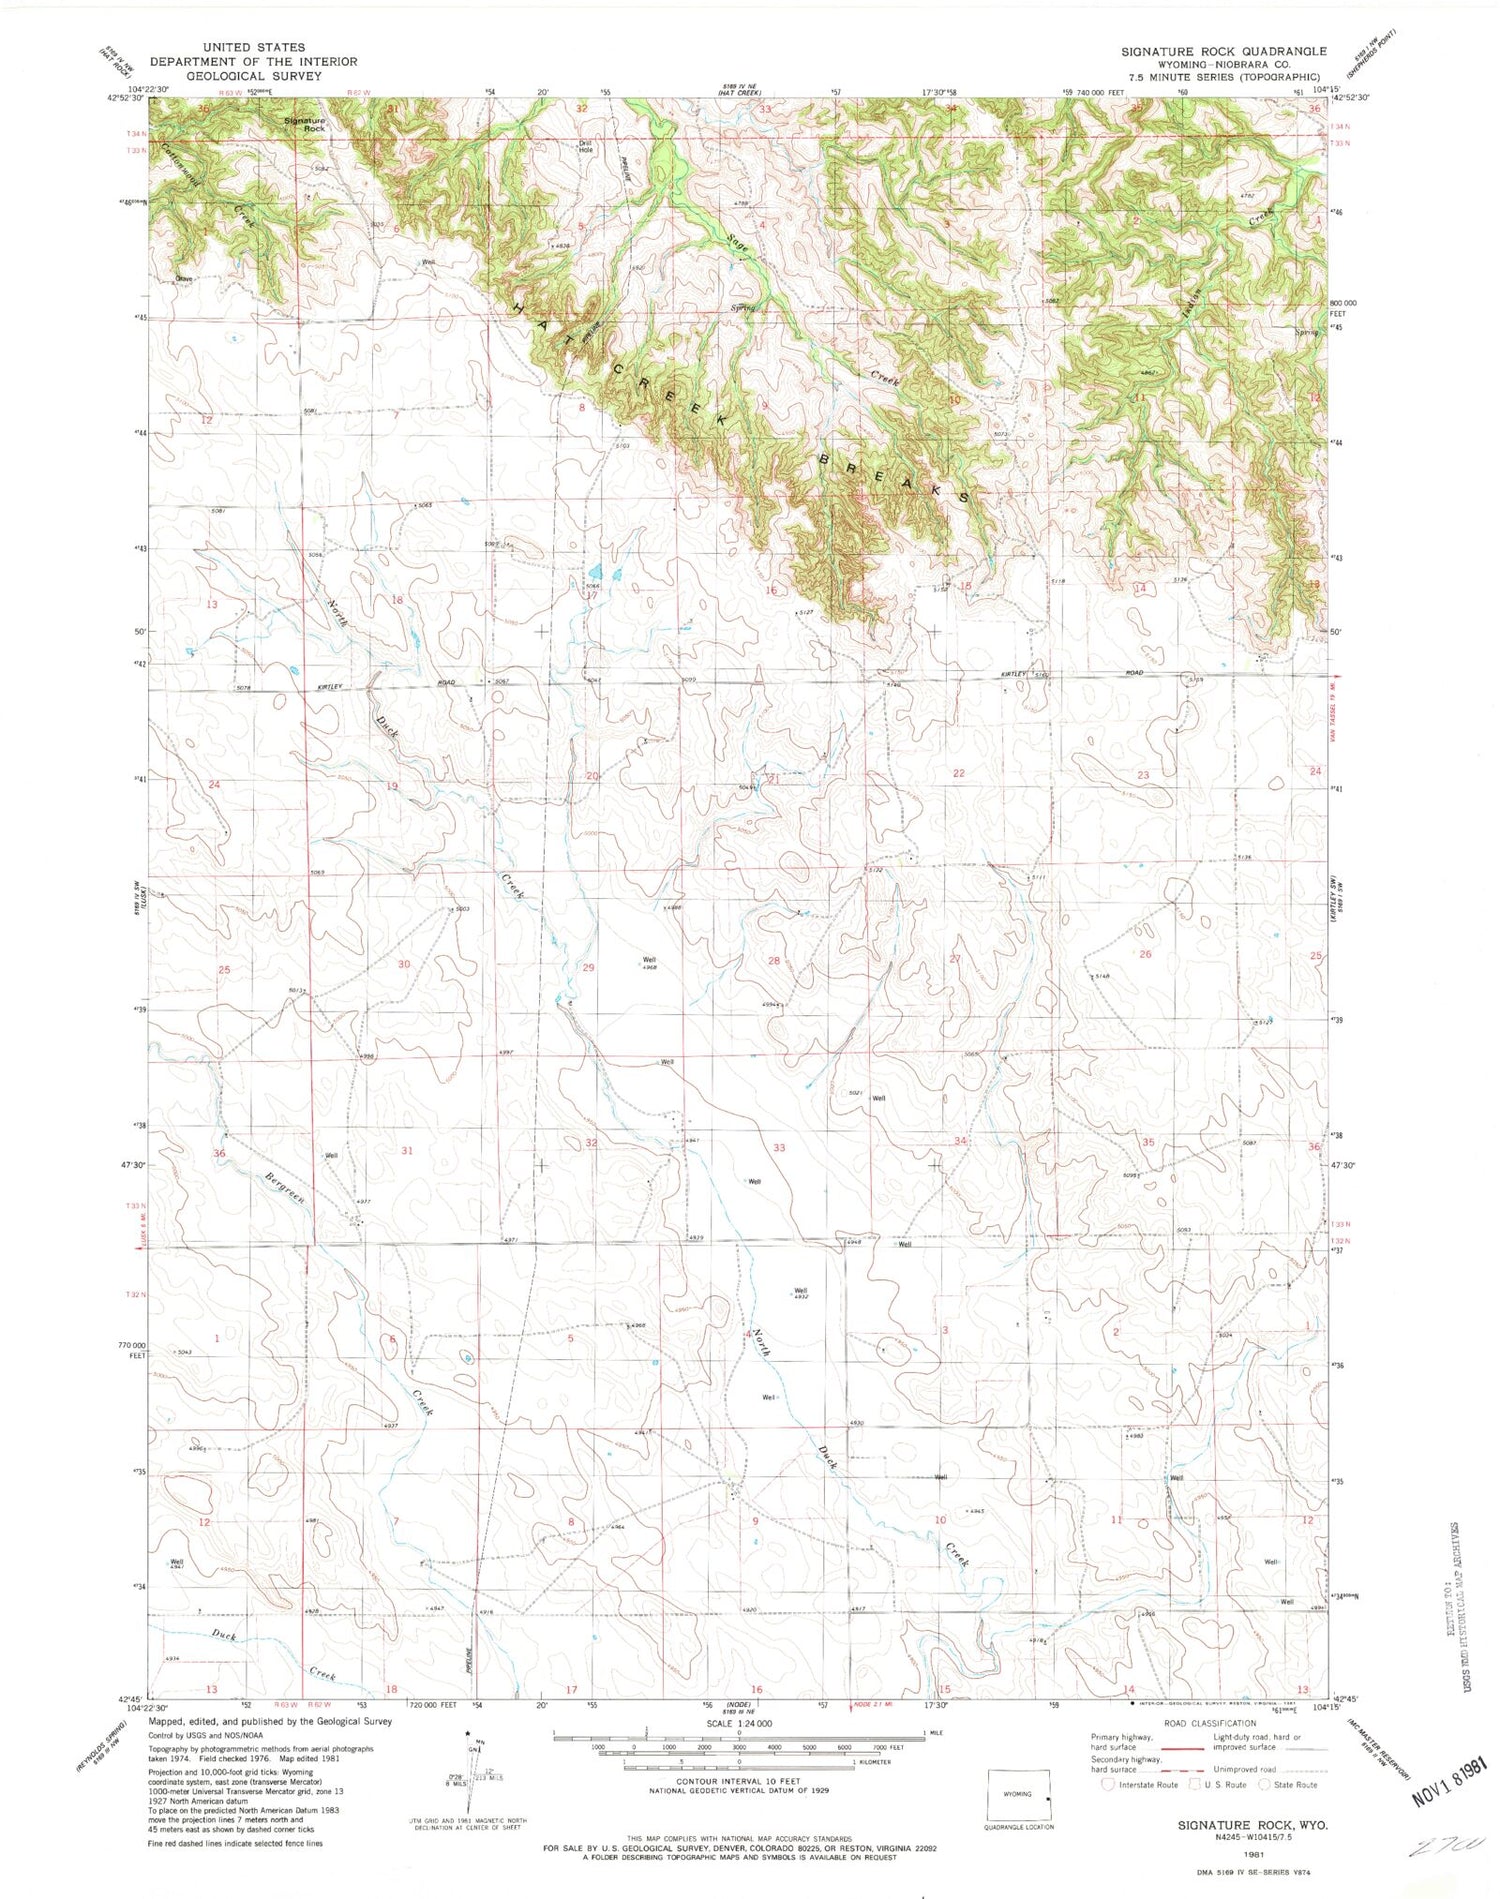 Classic USGS Signature Rock Wyoming 7.5'x7.5' Topo Map Image